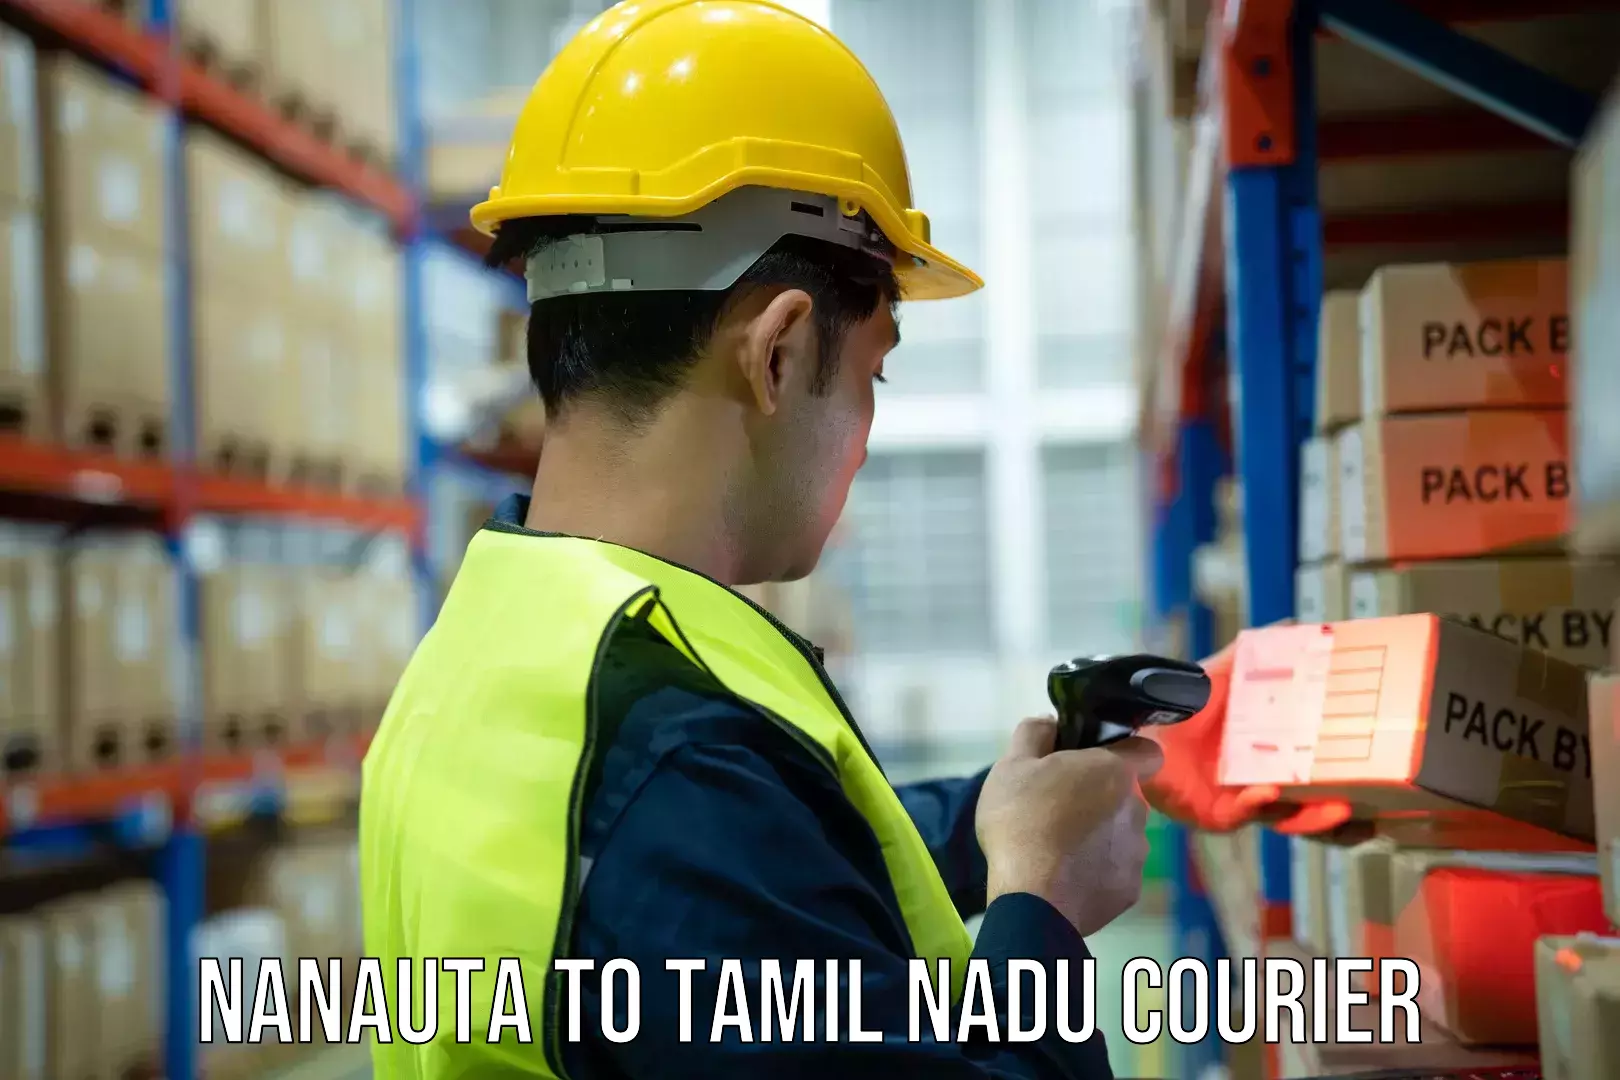 Urgent courier needs Nanauta to Tamil Nadu